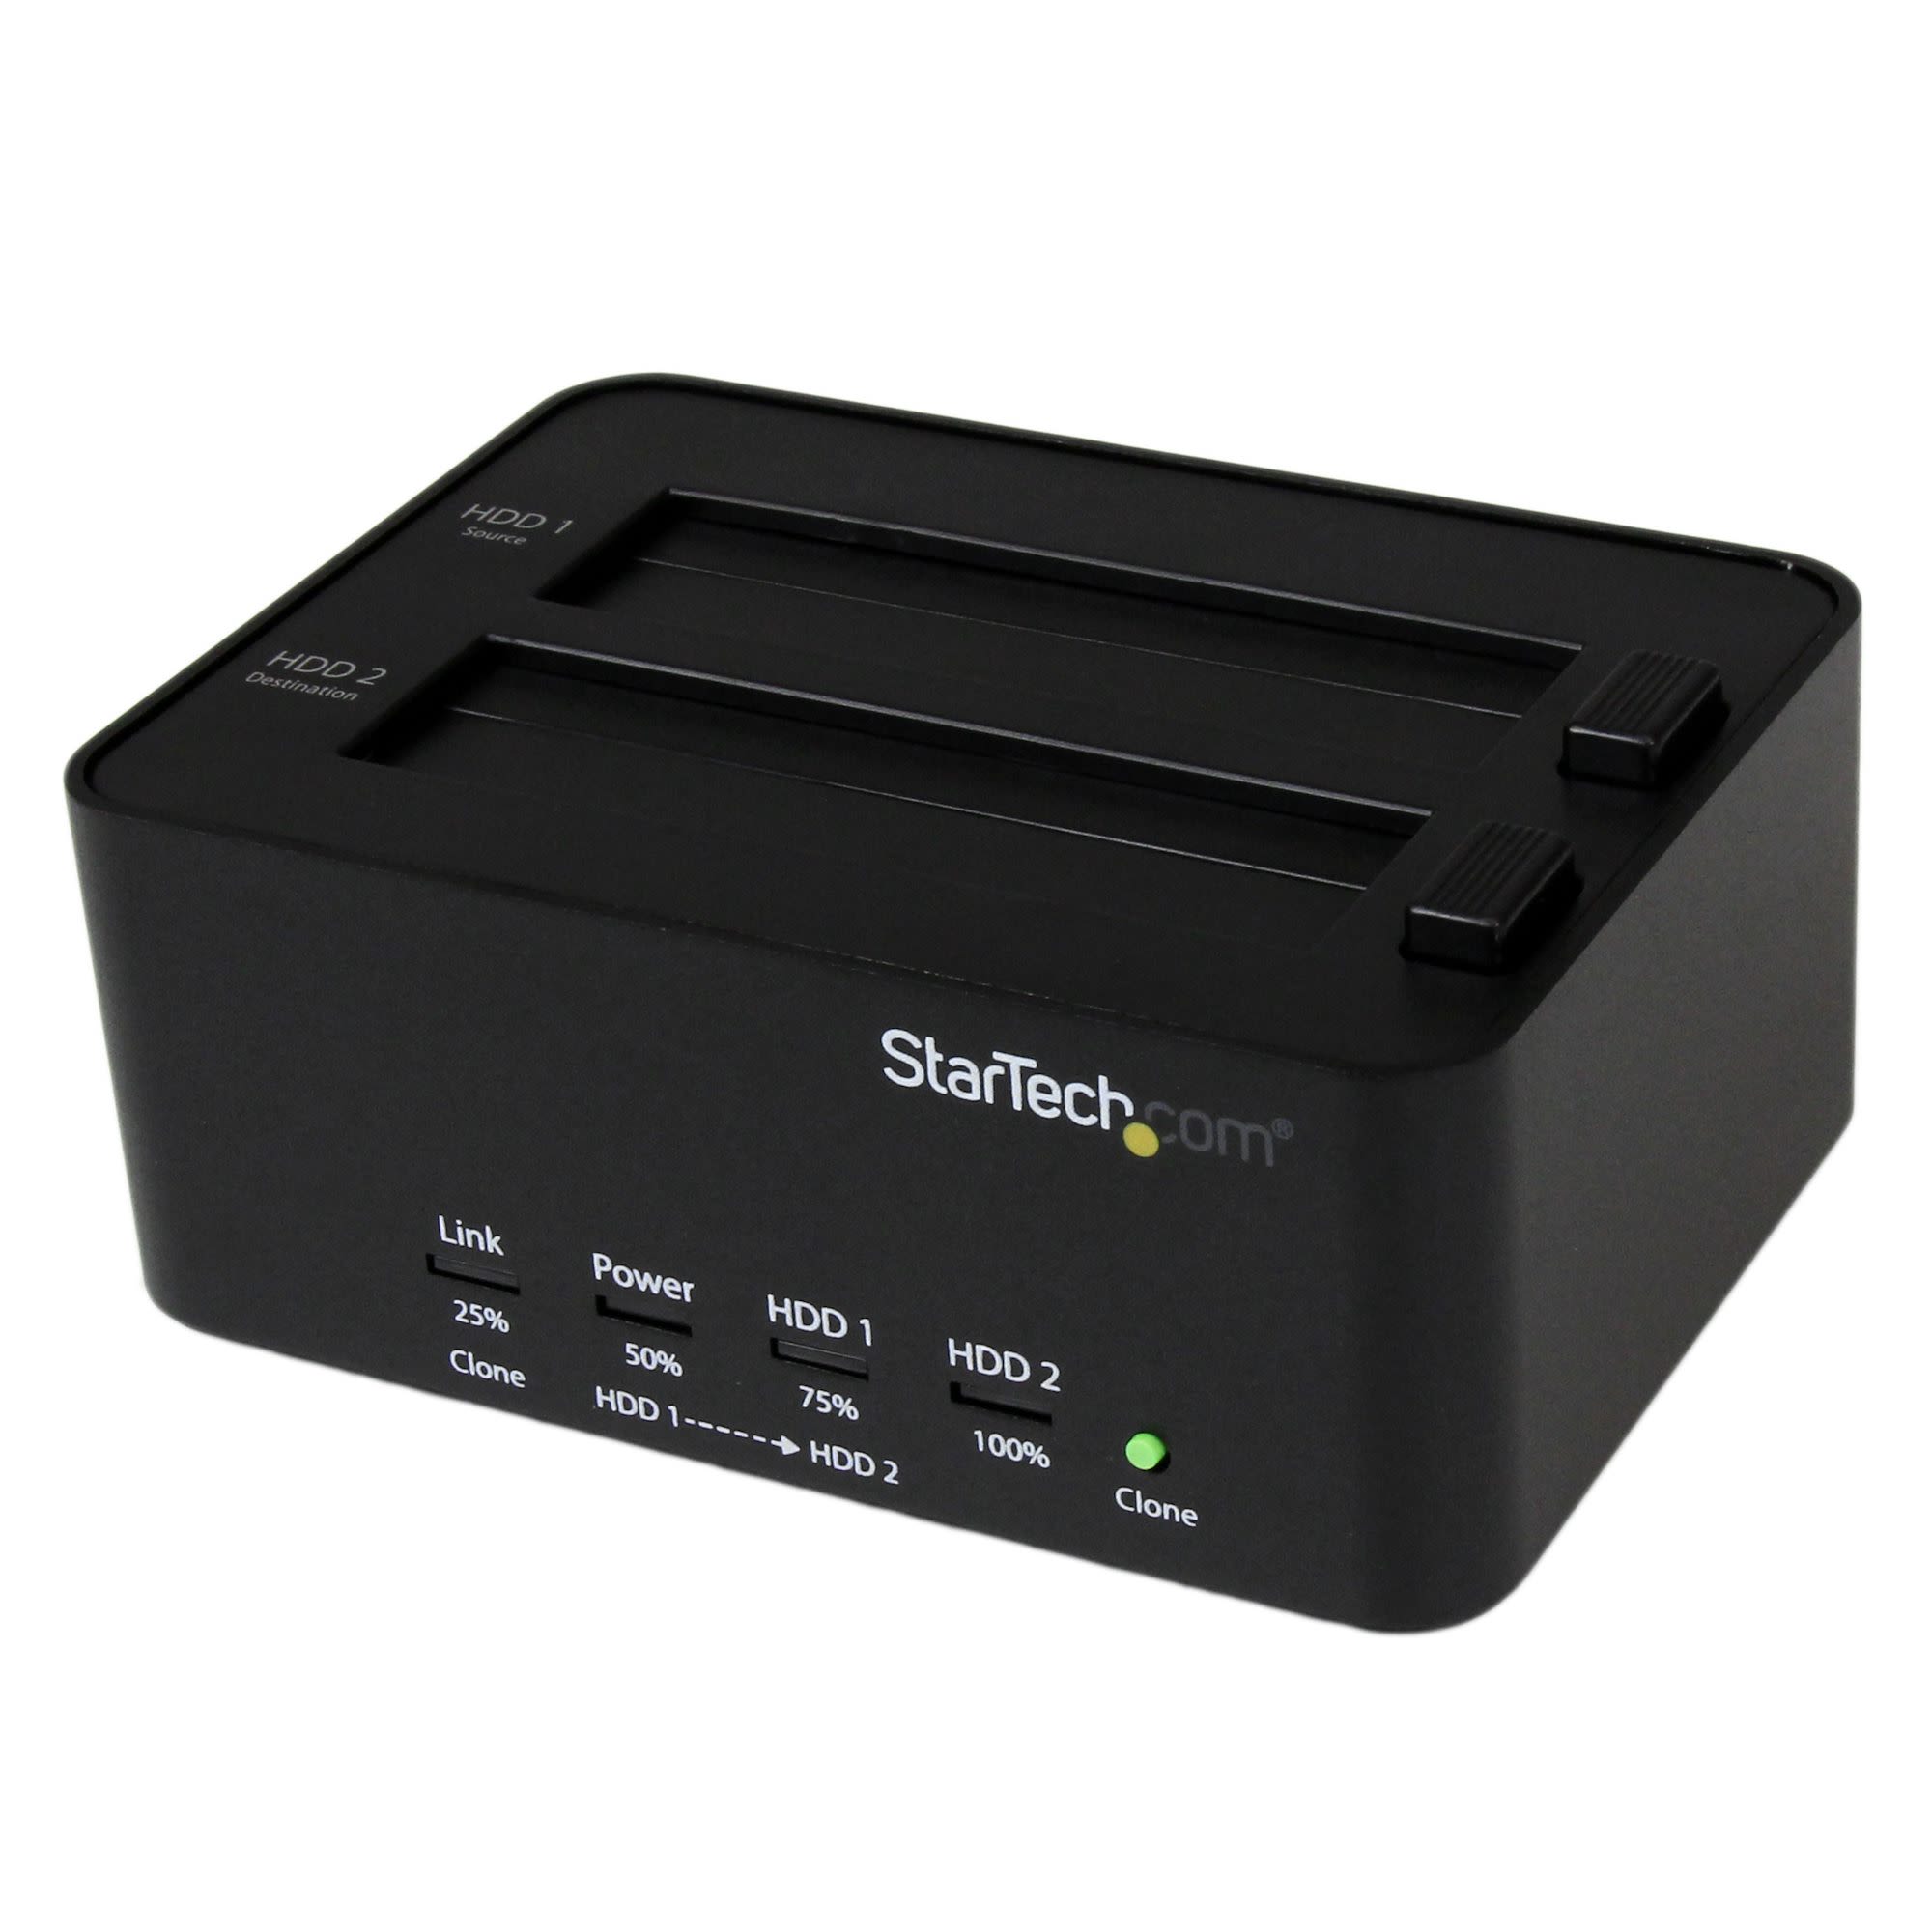 StarTech.com USB 3.0 Hard Drive Dock Duplicator for 2 SATA Hard Drive